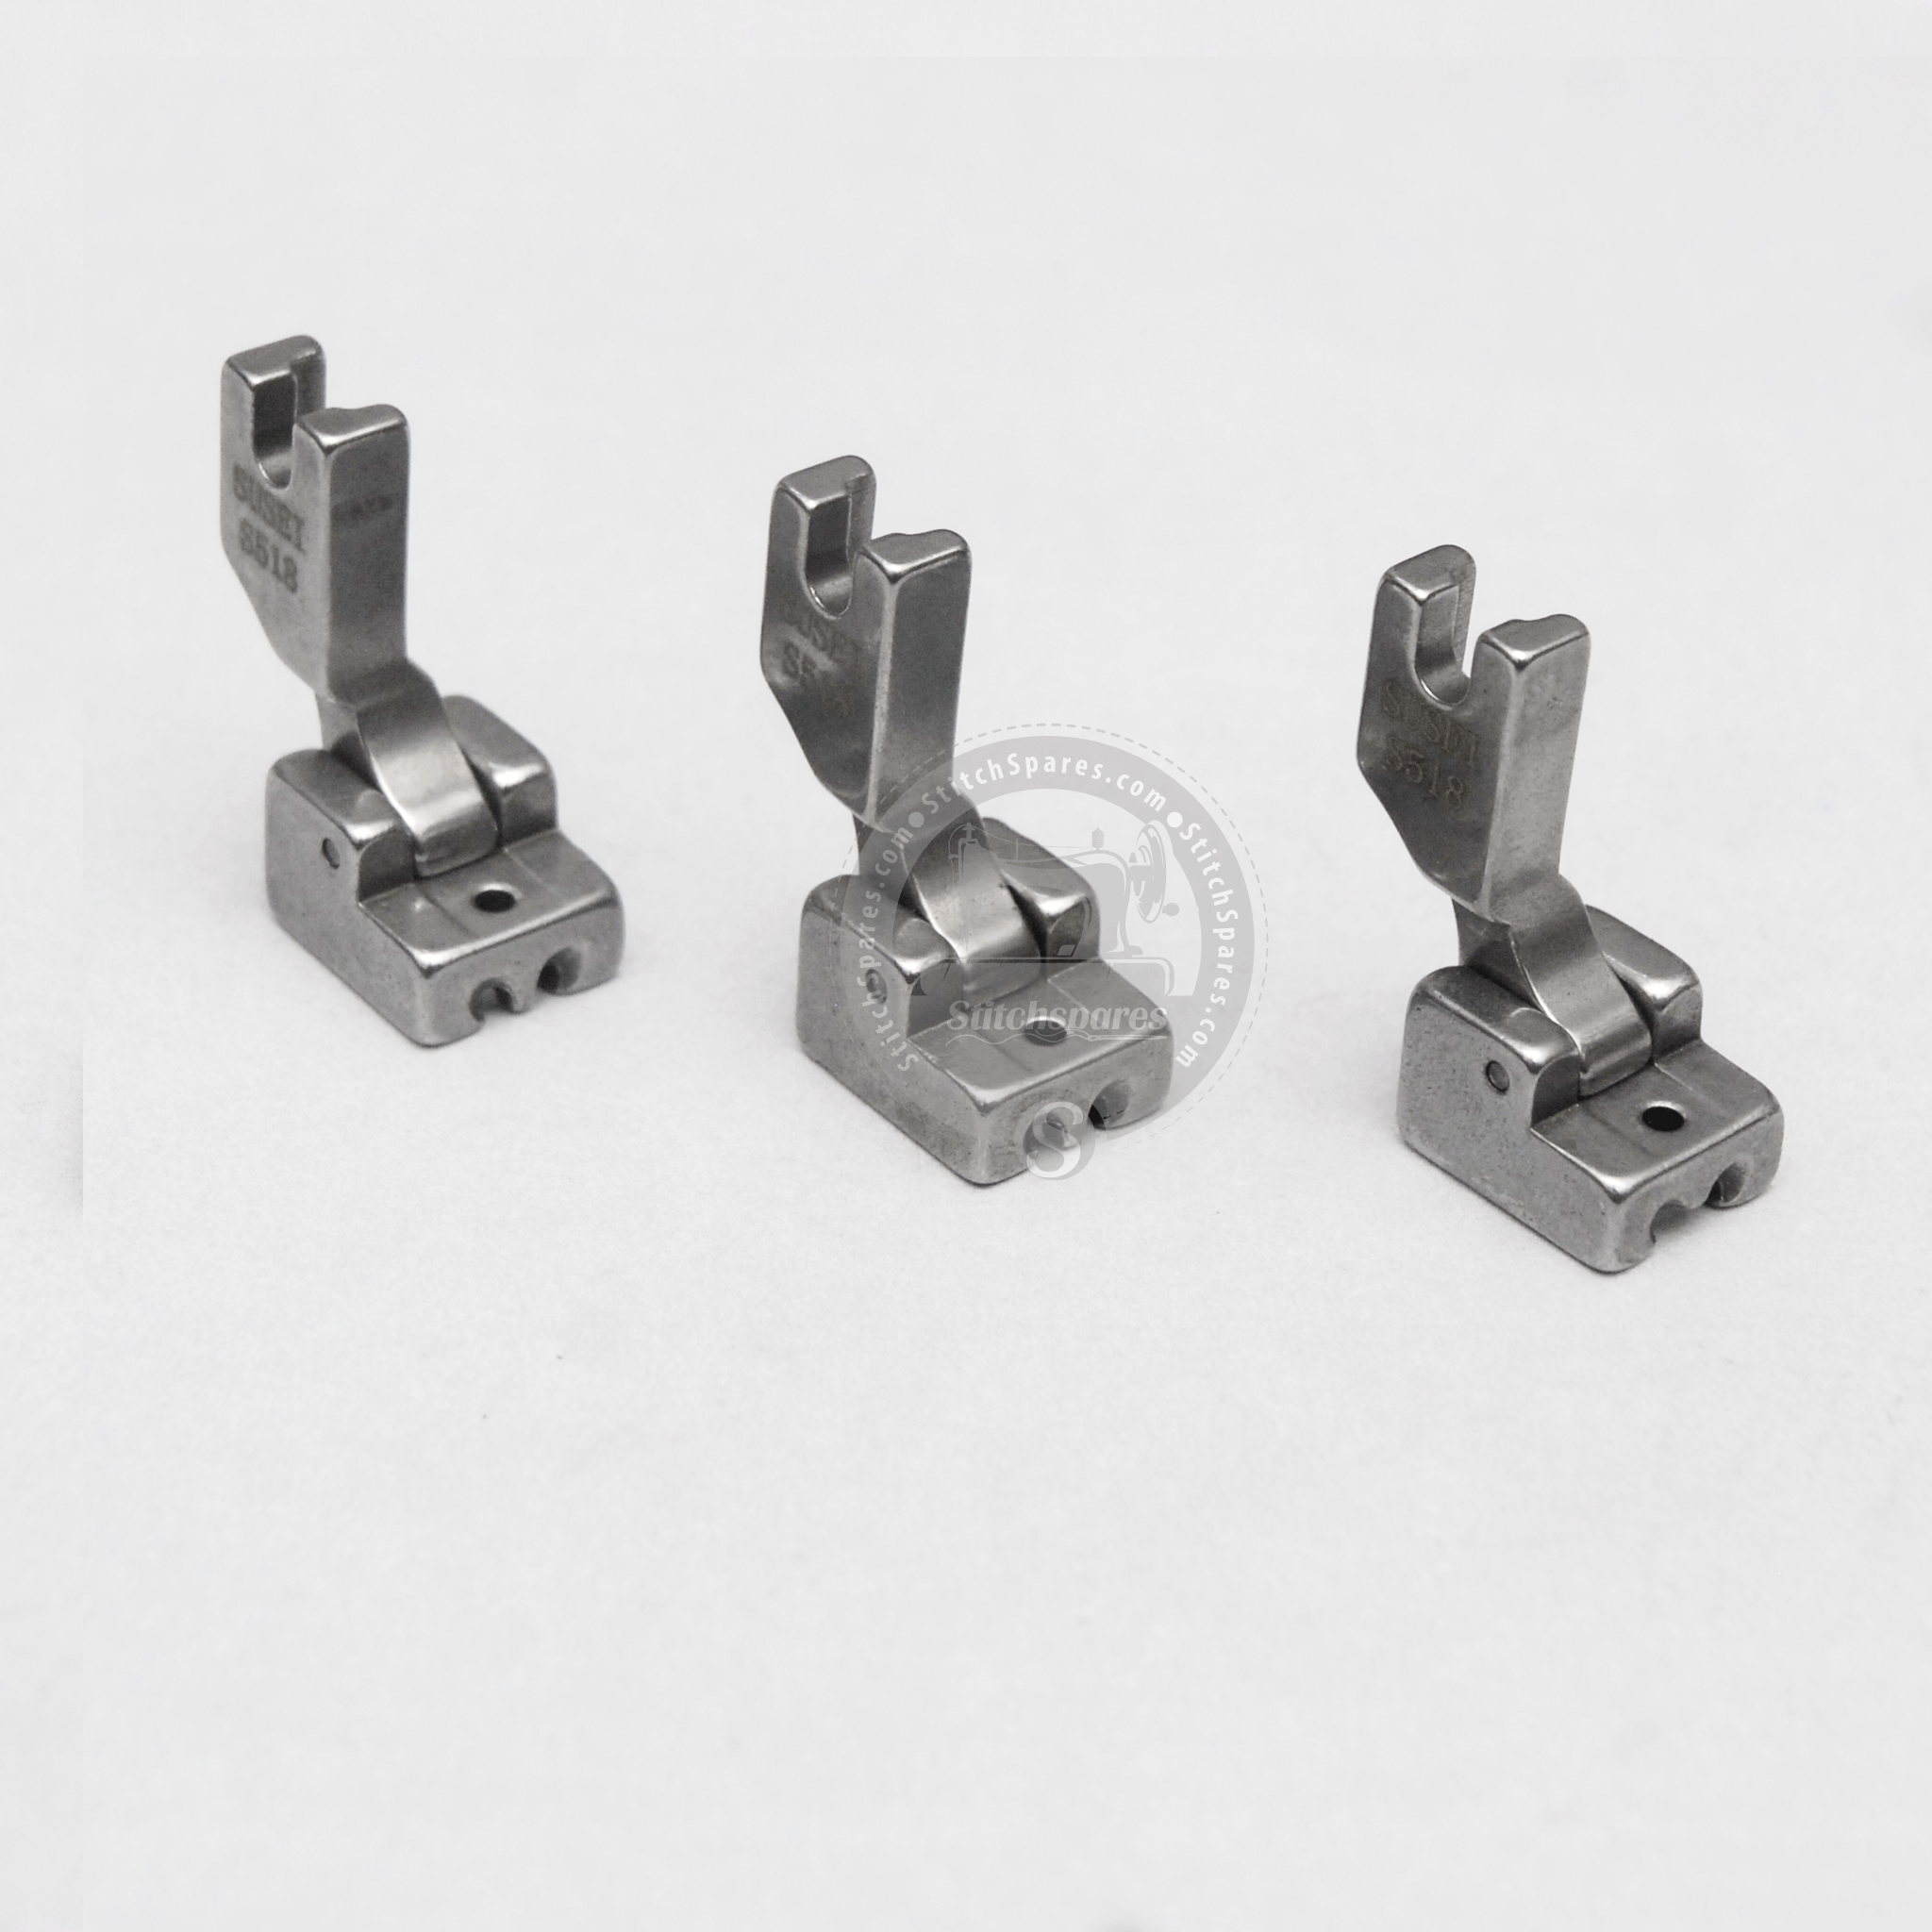 Invisible Zipper Foot (Plastic) for Juki TL & J-150 QVP Machines